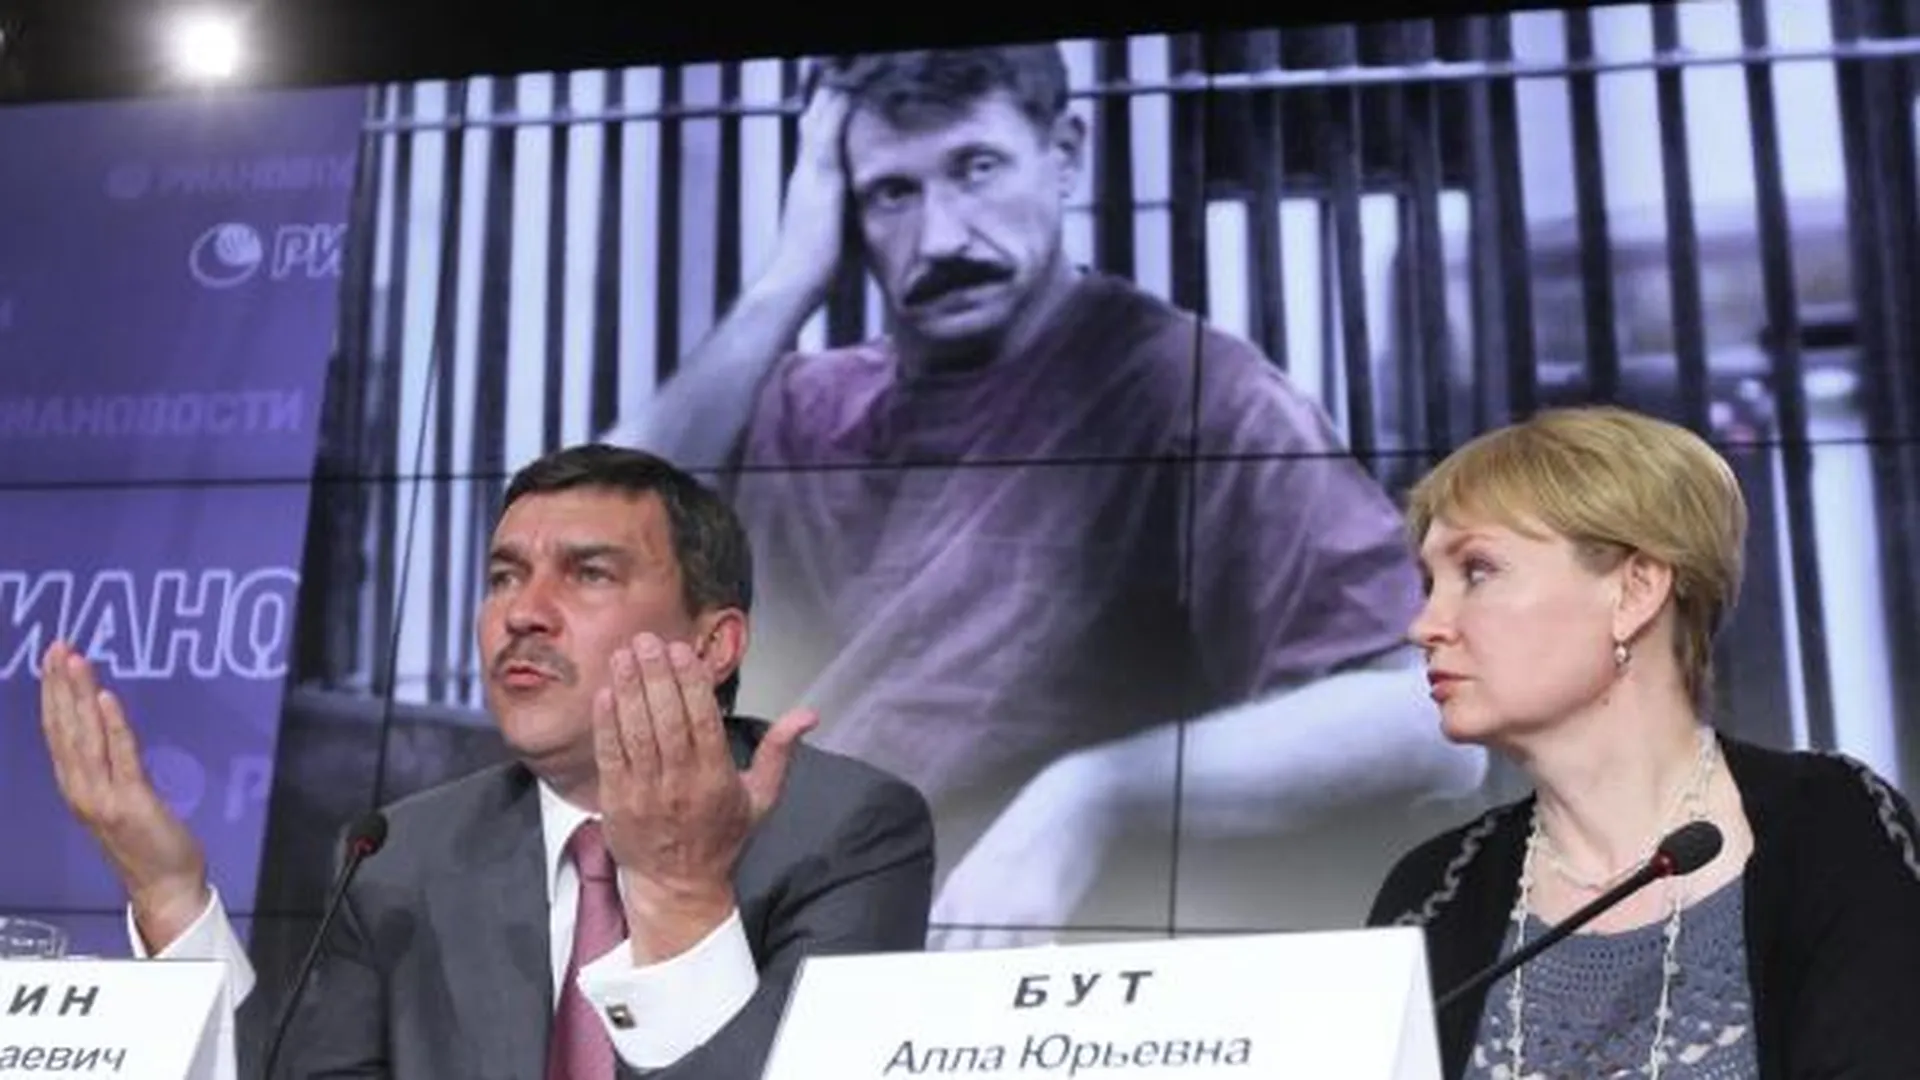 Адвокат Виктор Буробин и супруга Виктора Бута Алла отвечают на вопросы журналистов на пресс-конференции, 2012 год